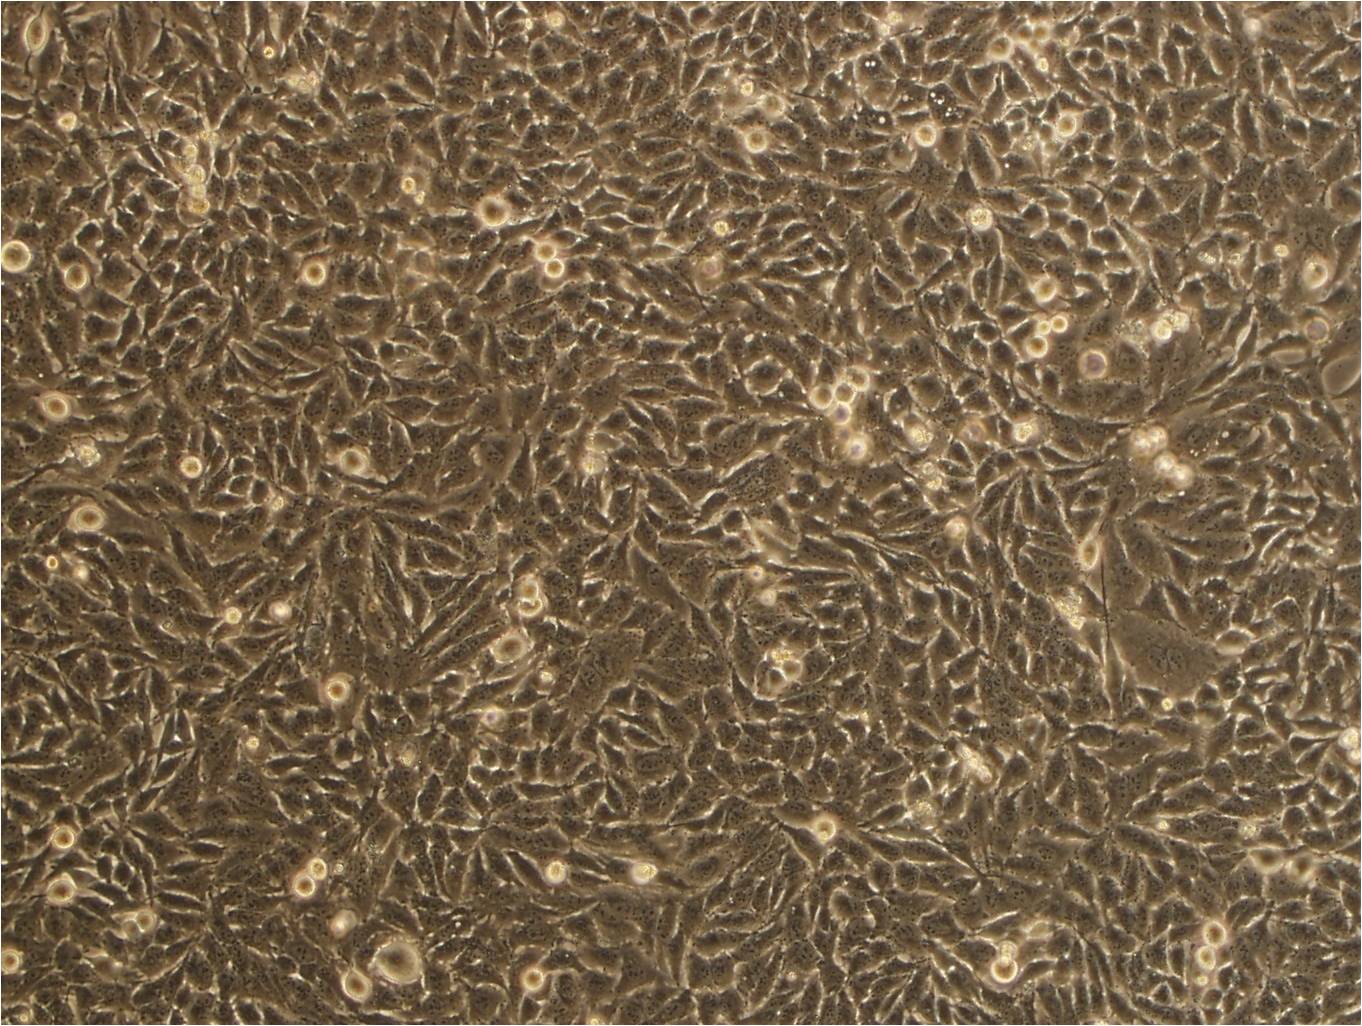 OCM-1A Cell|人脉络膜黑色素瘤细胞,OCM-1A Cell